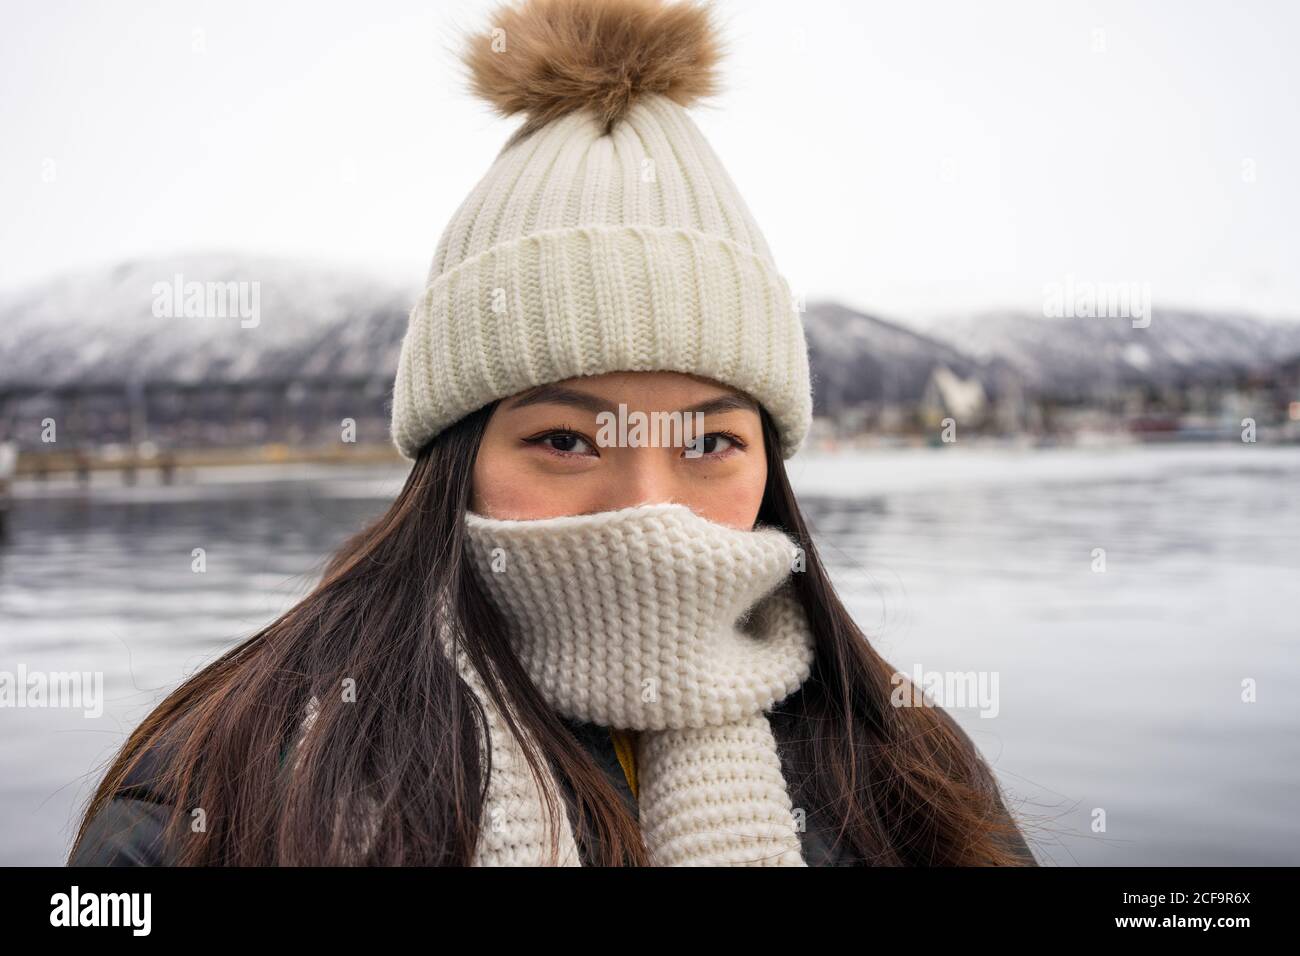 Junge fröhliche asiatische weibliche Tourist in warmer Kleidung und Hut Lächelnd beim Sightseeing mit Bergen und Meer im Hintergrund Tromso in NorwayBlick auf die Kamera Stockfoto